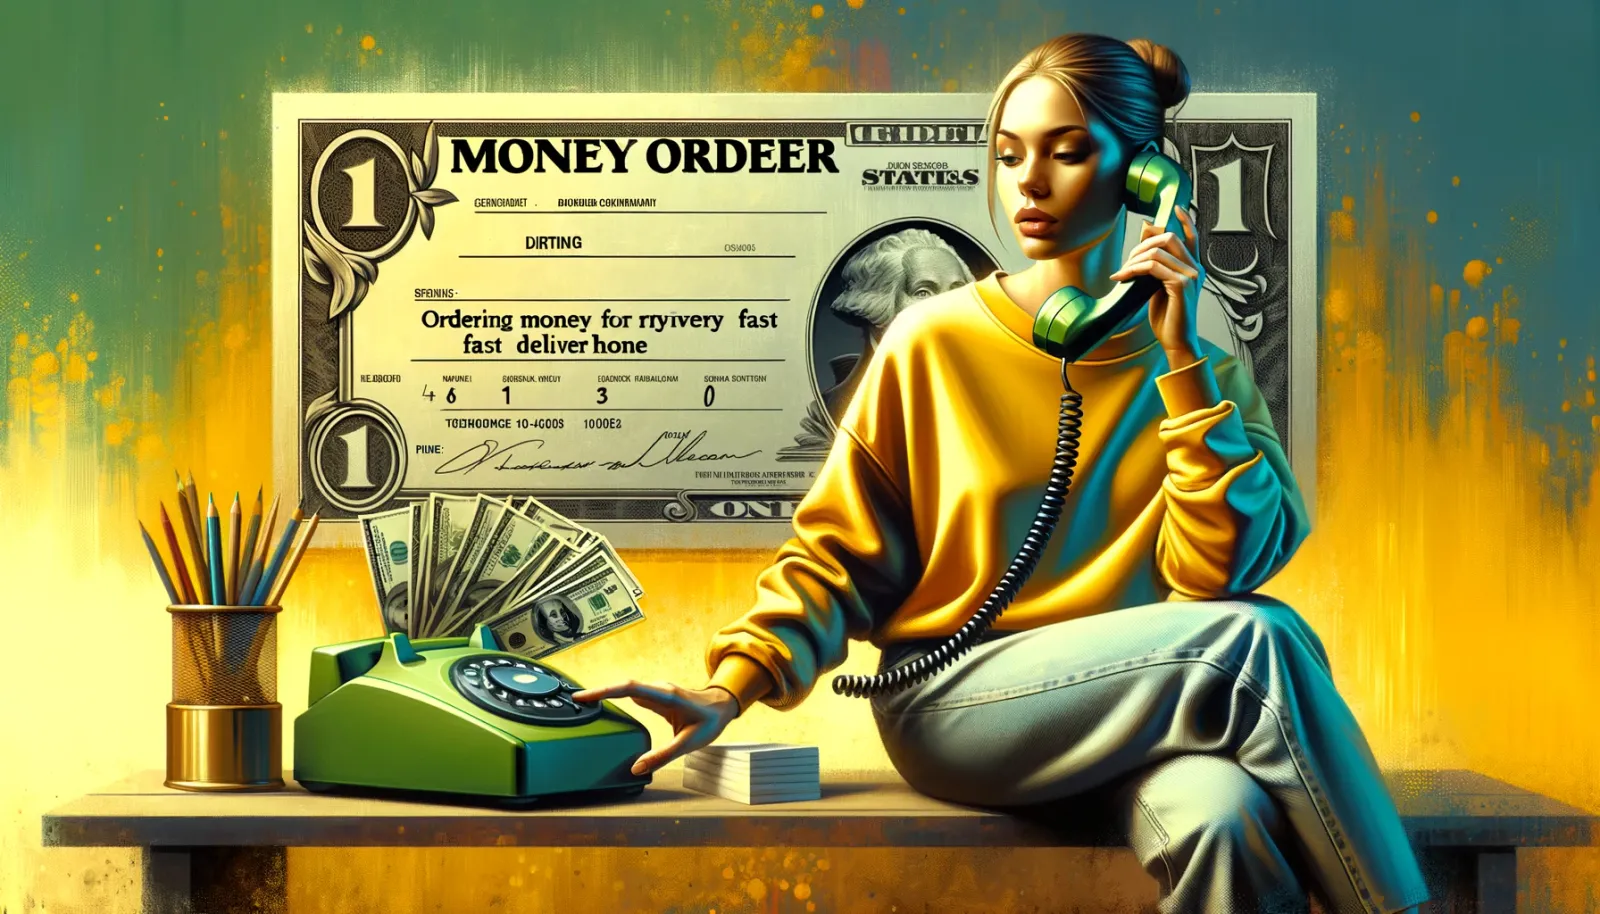 Money Order: Finance Explained